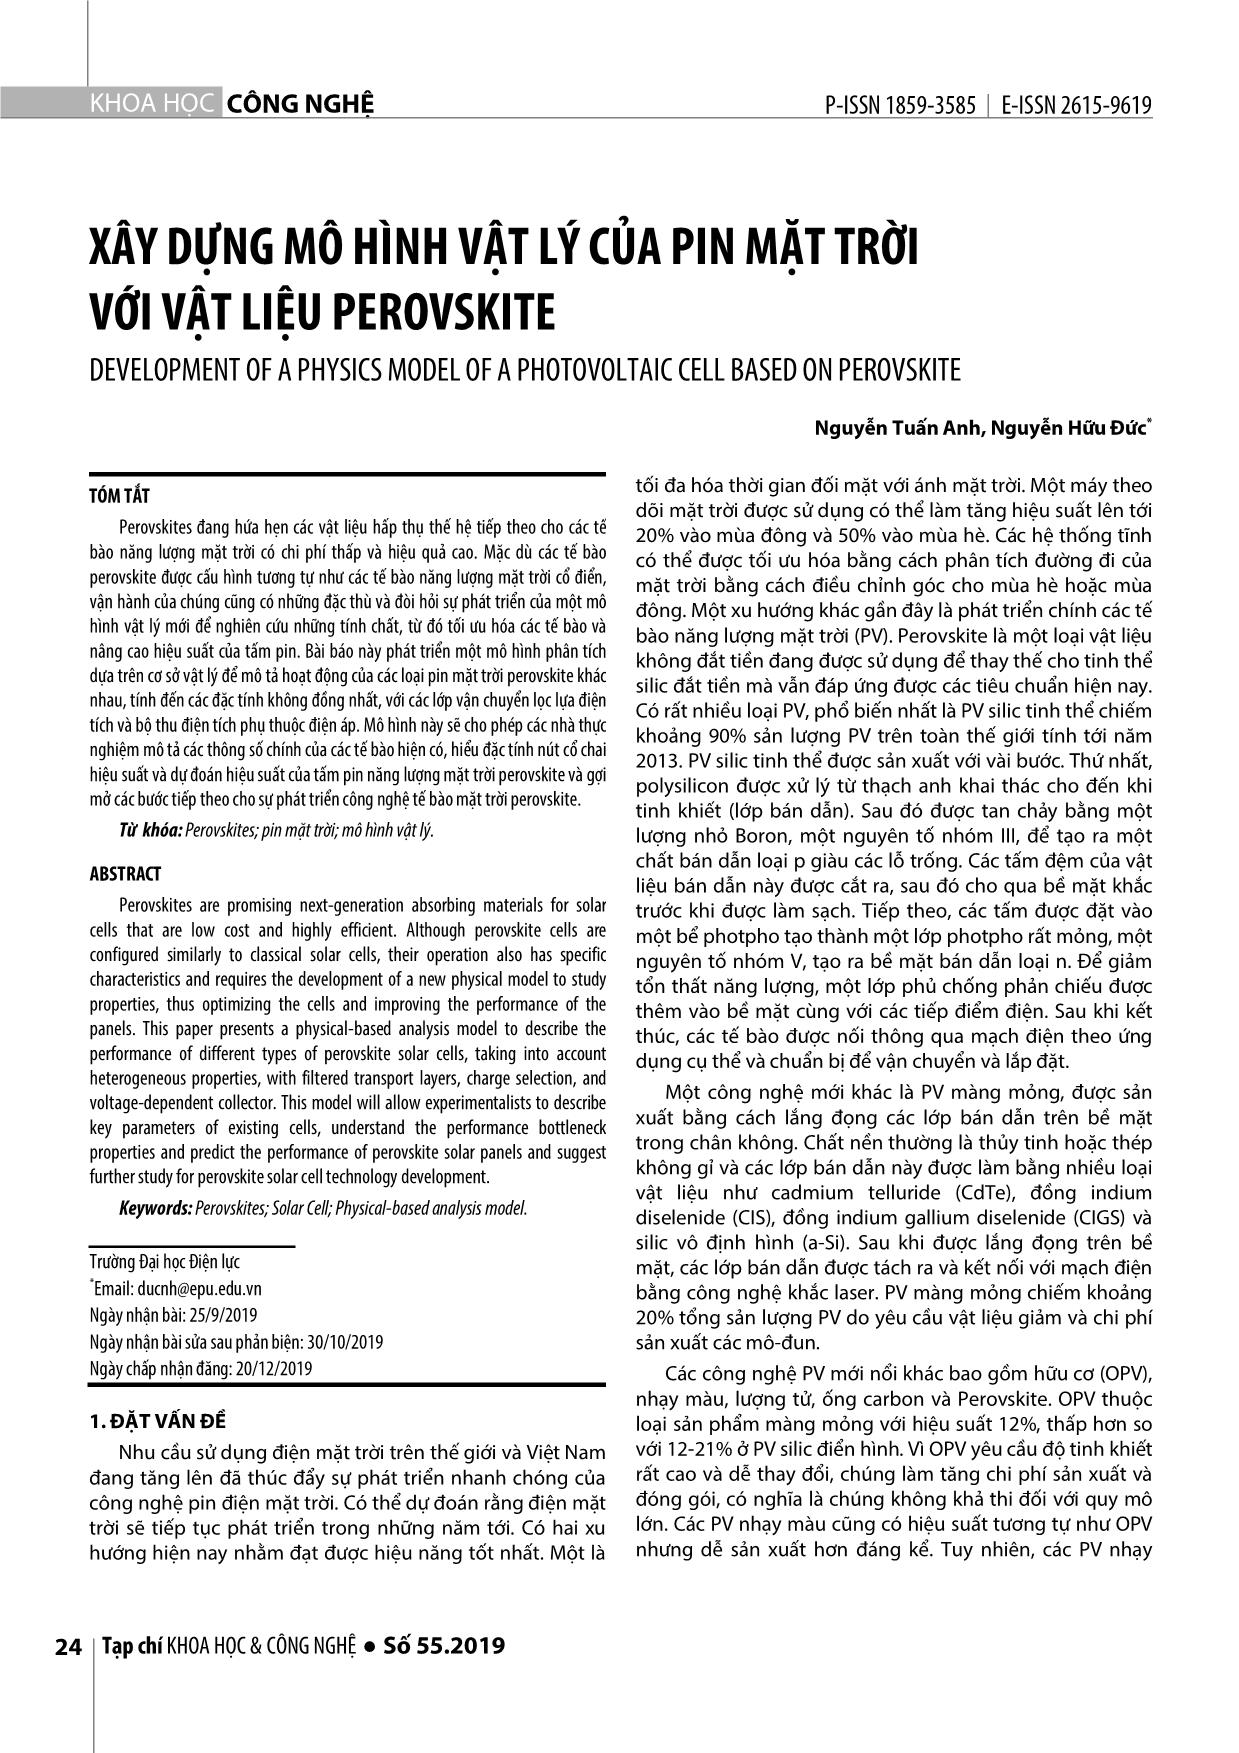 Xây dựng mô hình vật lý của pin mặt trời với vật liệu perovskite trang 1